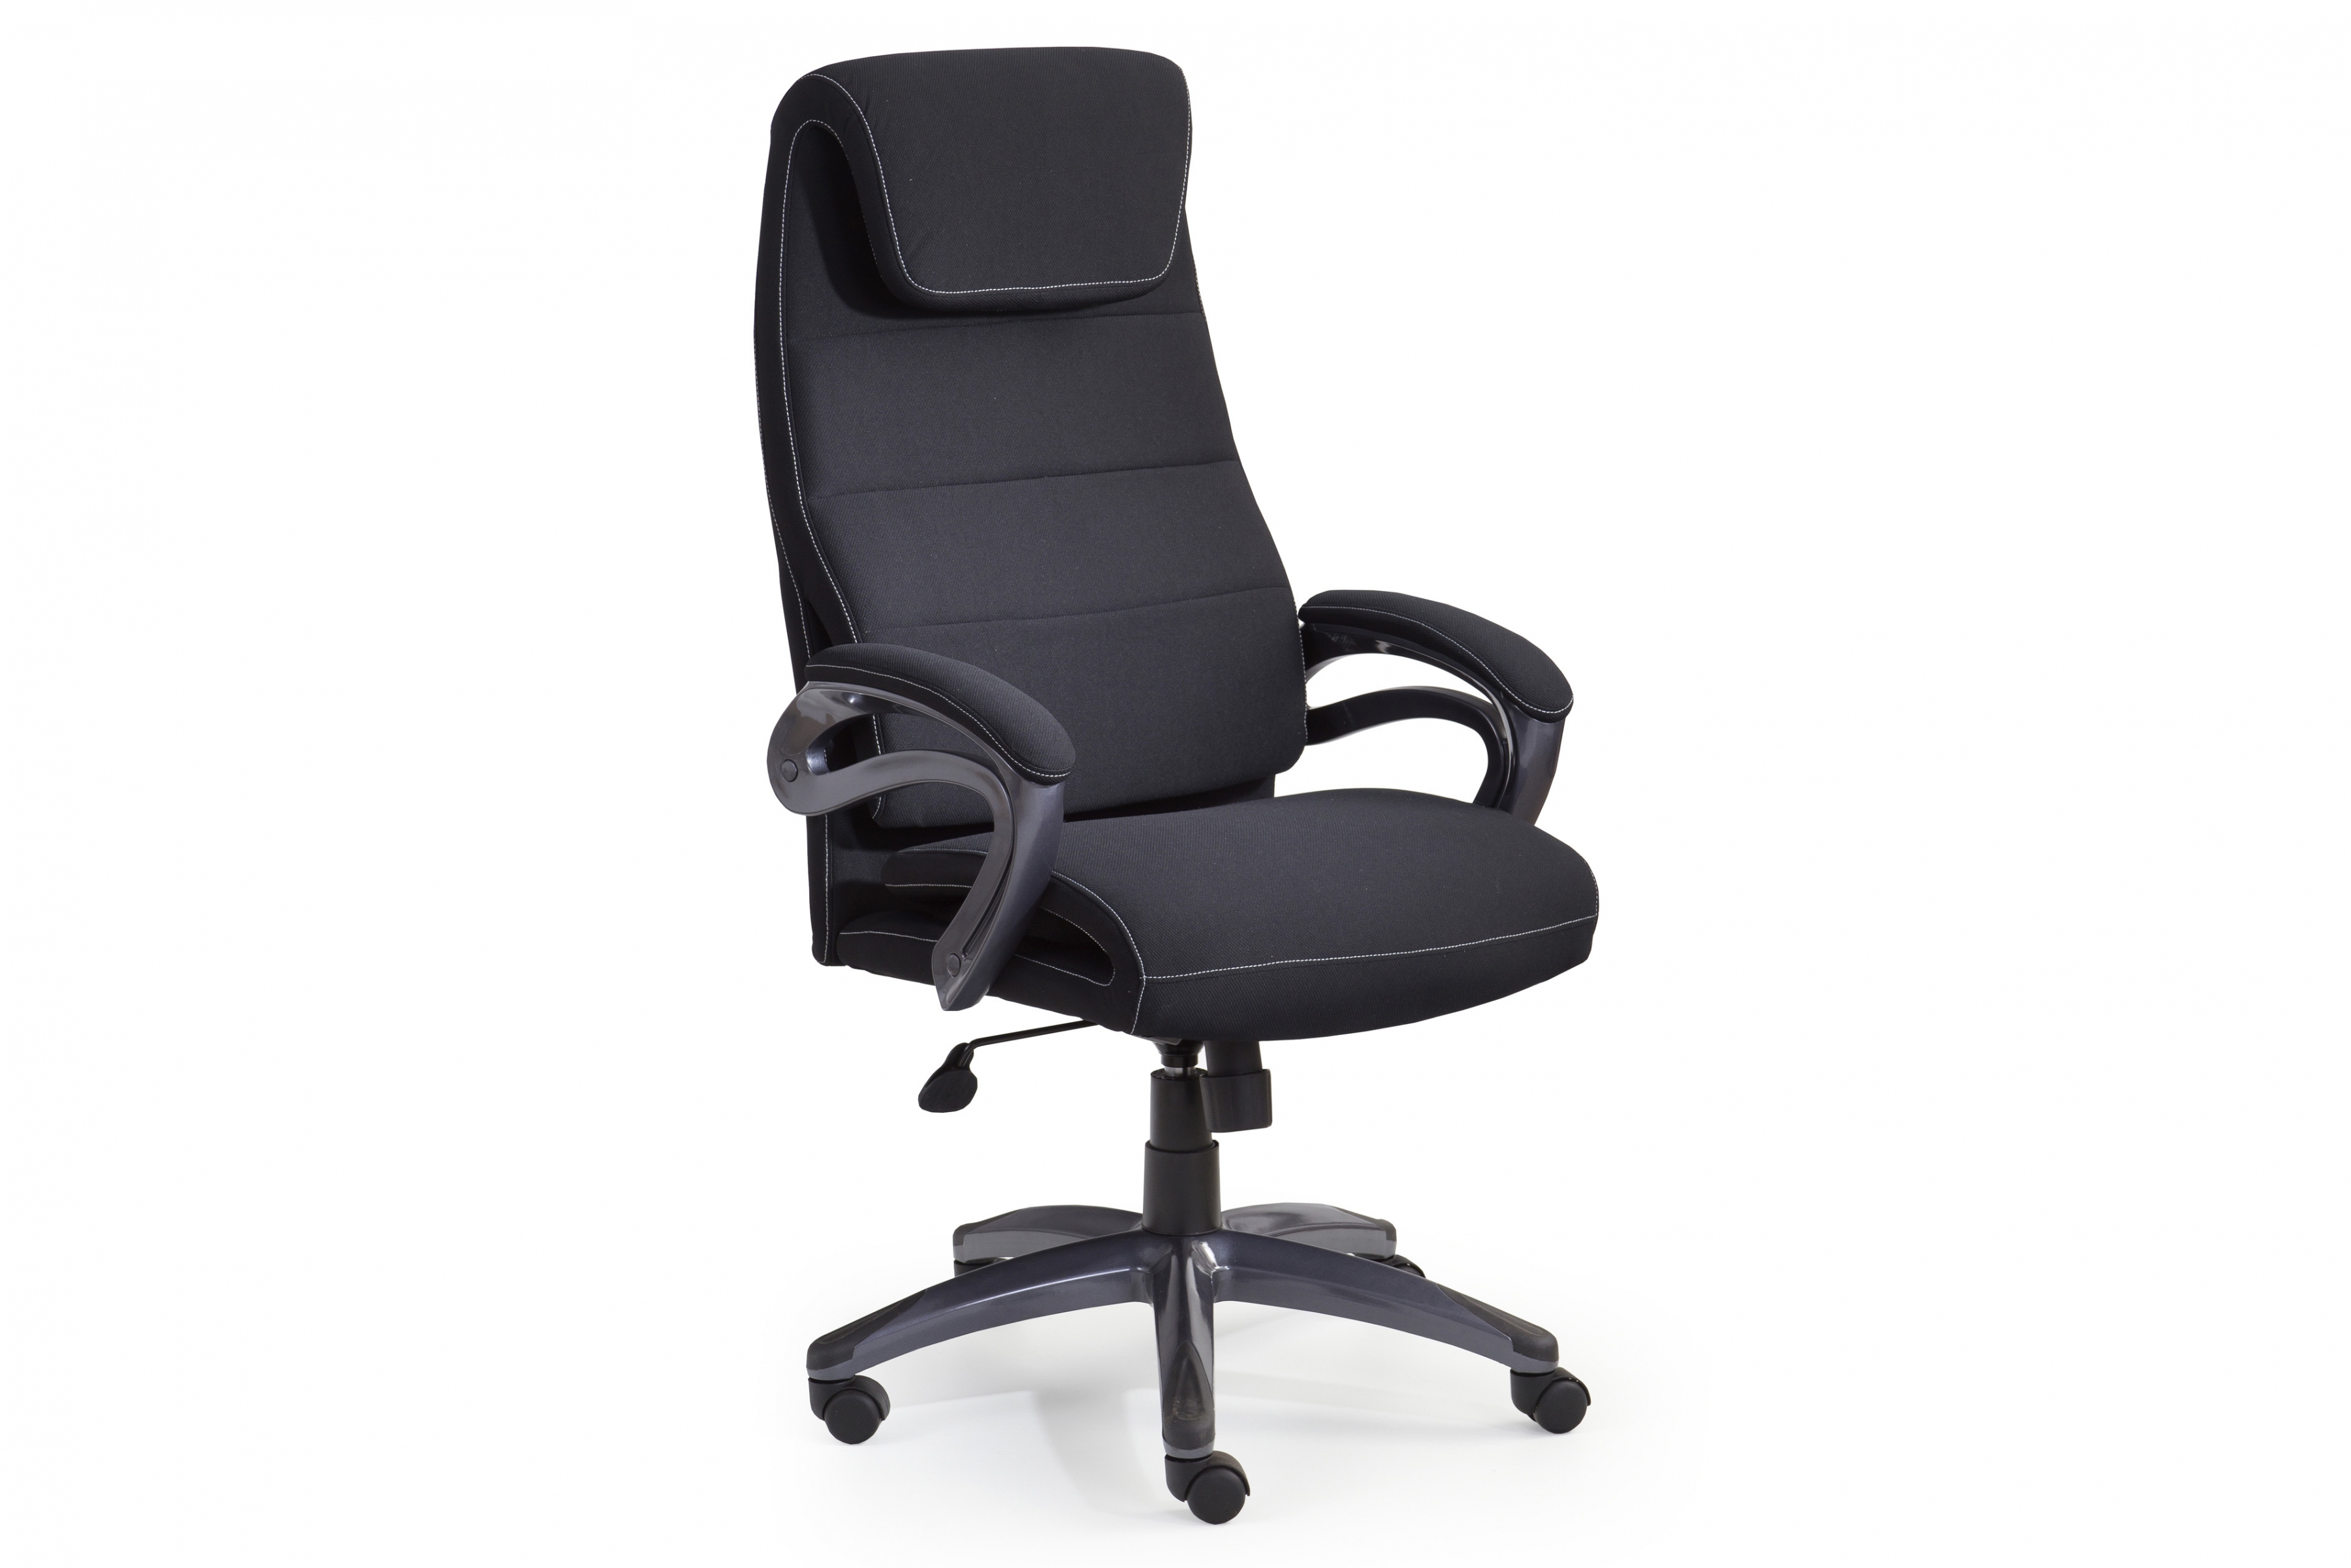 Kancelářská židle Sidney - černá Kancelářske křeslo Sidney z podlokietnikami - Černý